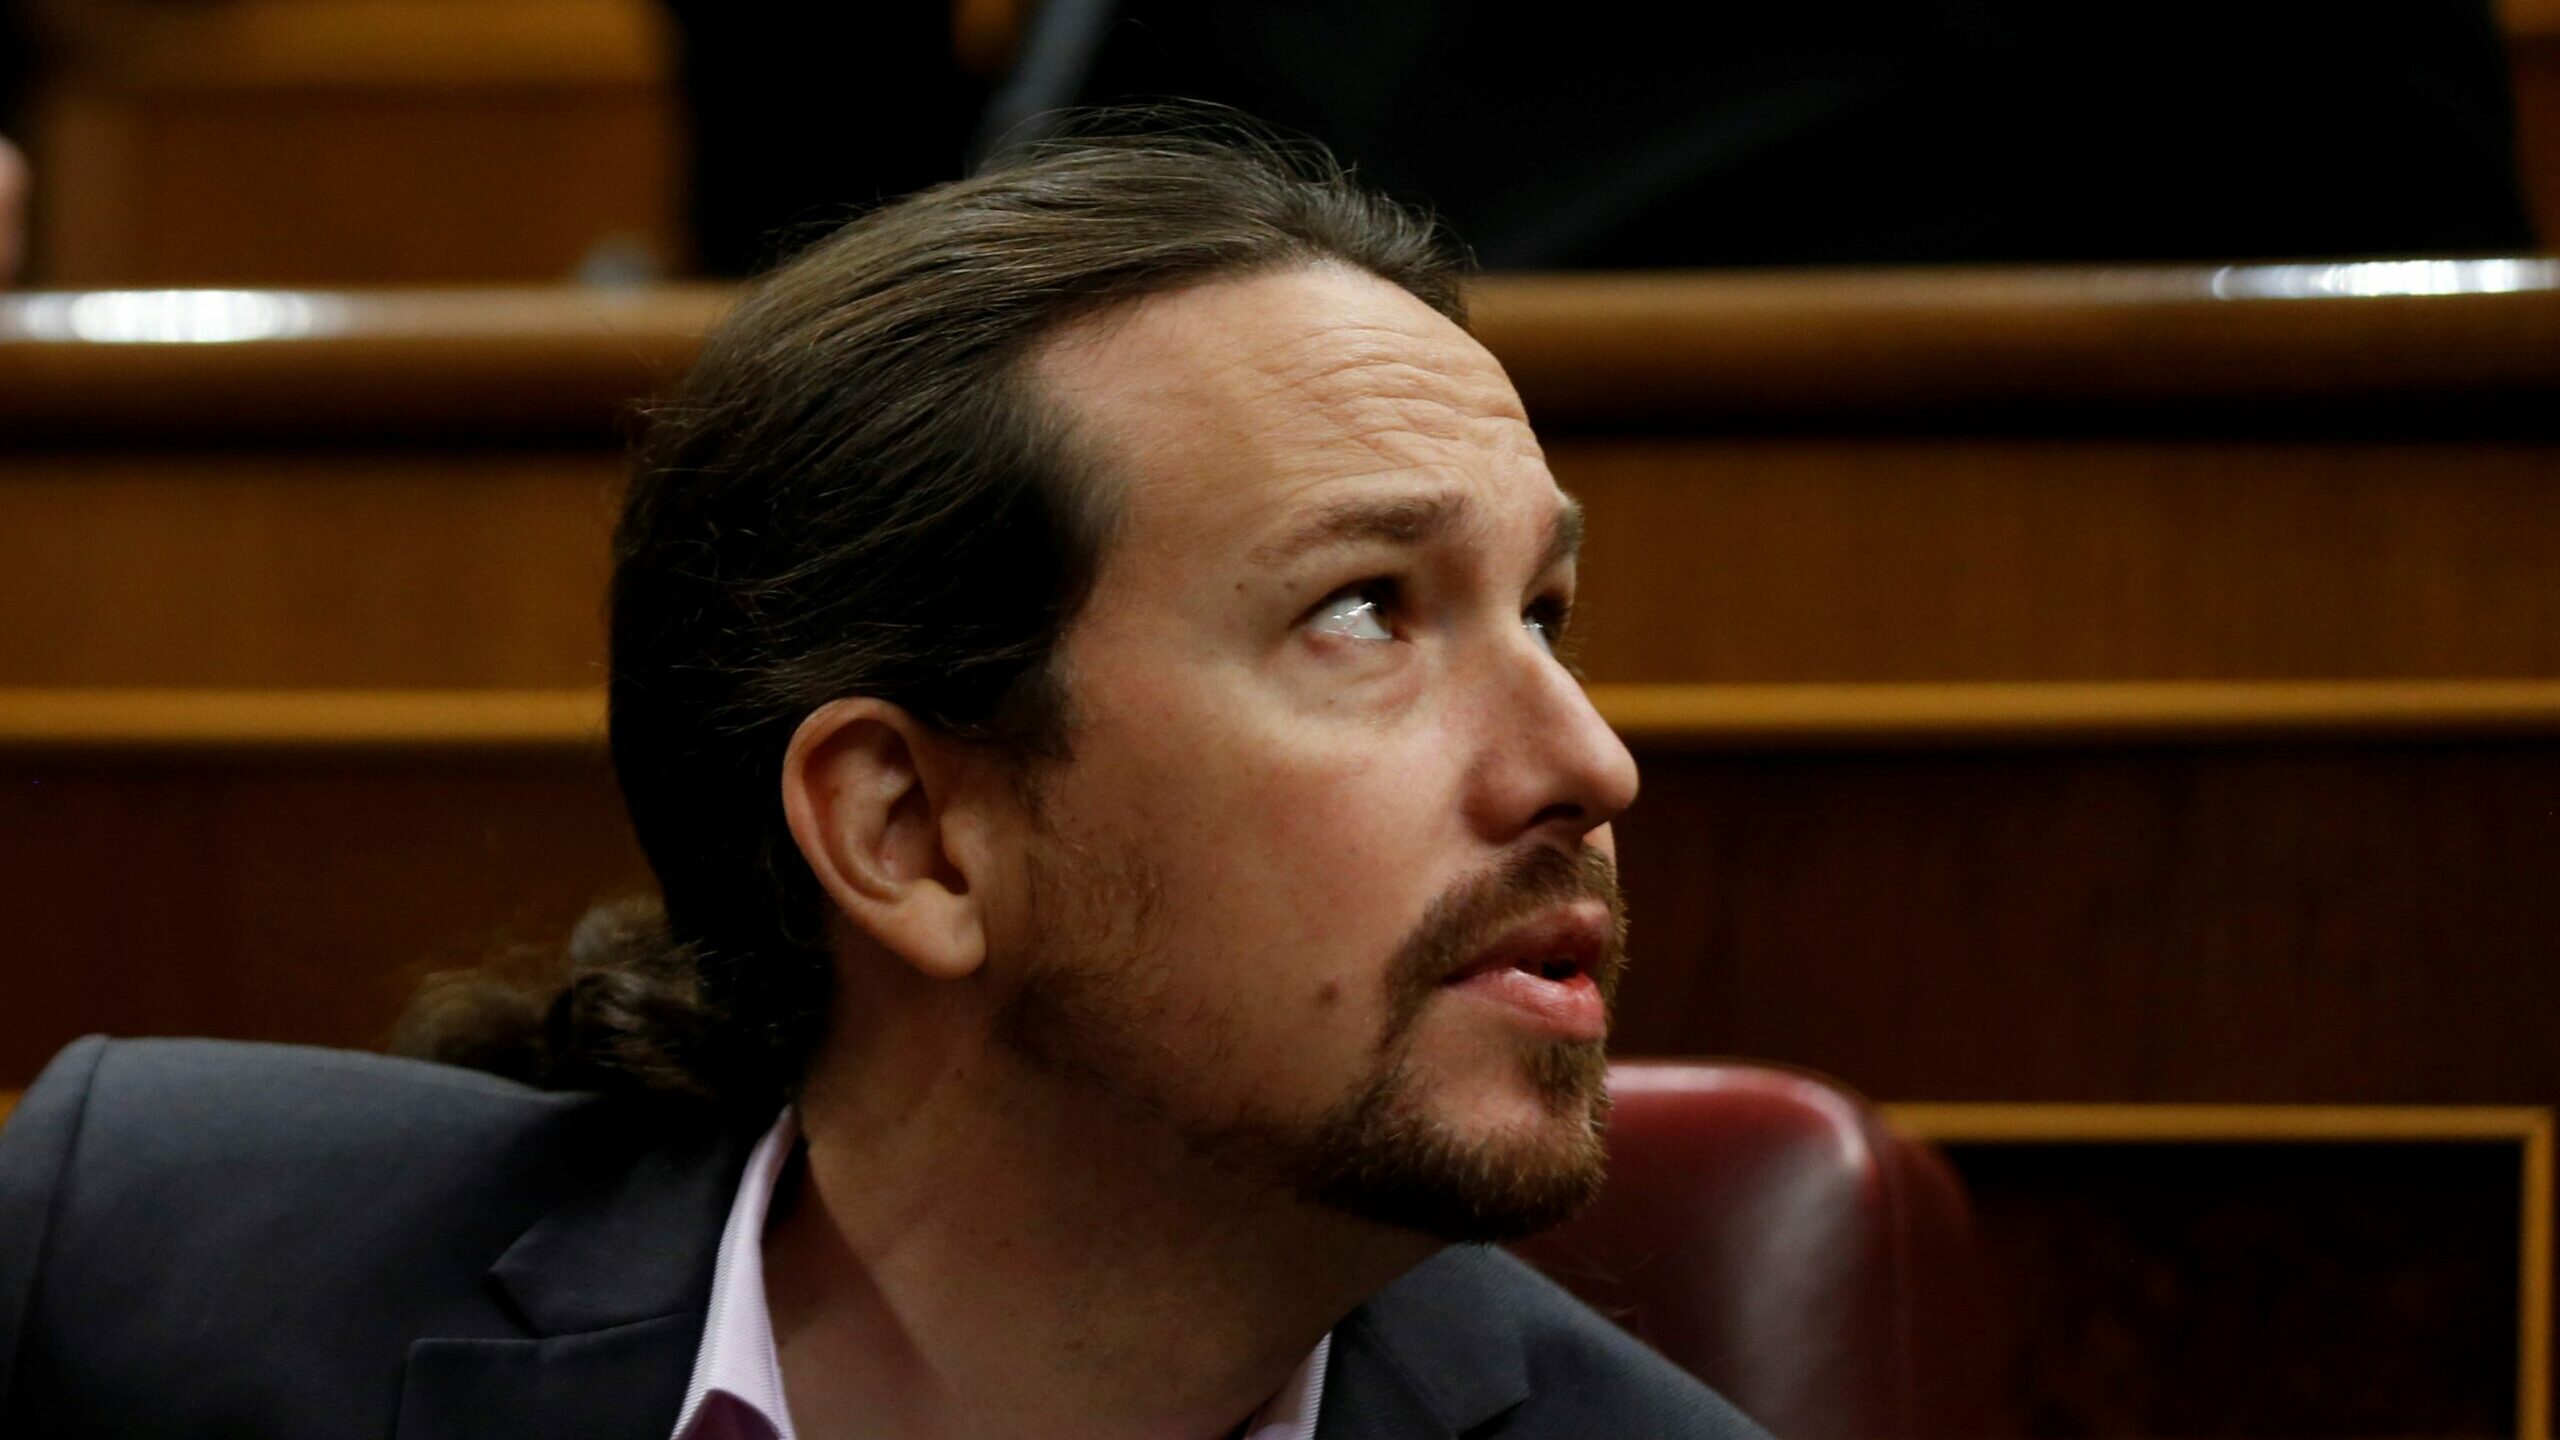 EEUU critica a Pablo Iglesias, Podemos y Vox en su informe sobre los derechos humanos